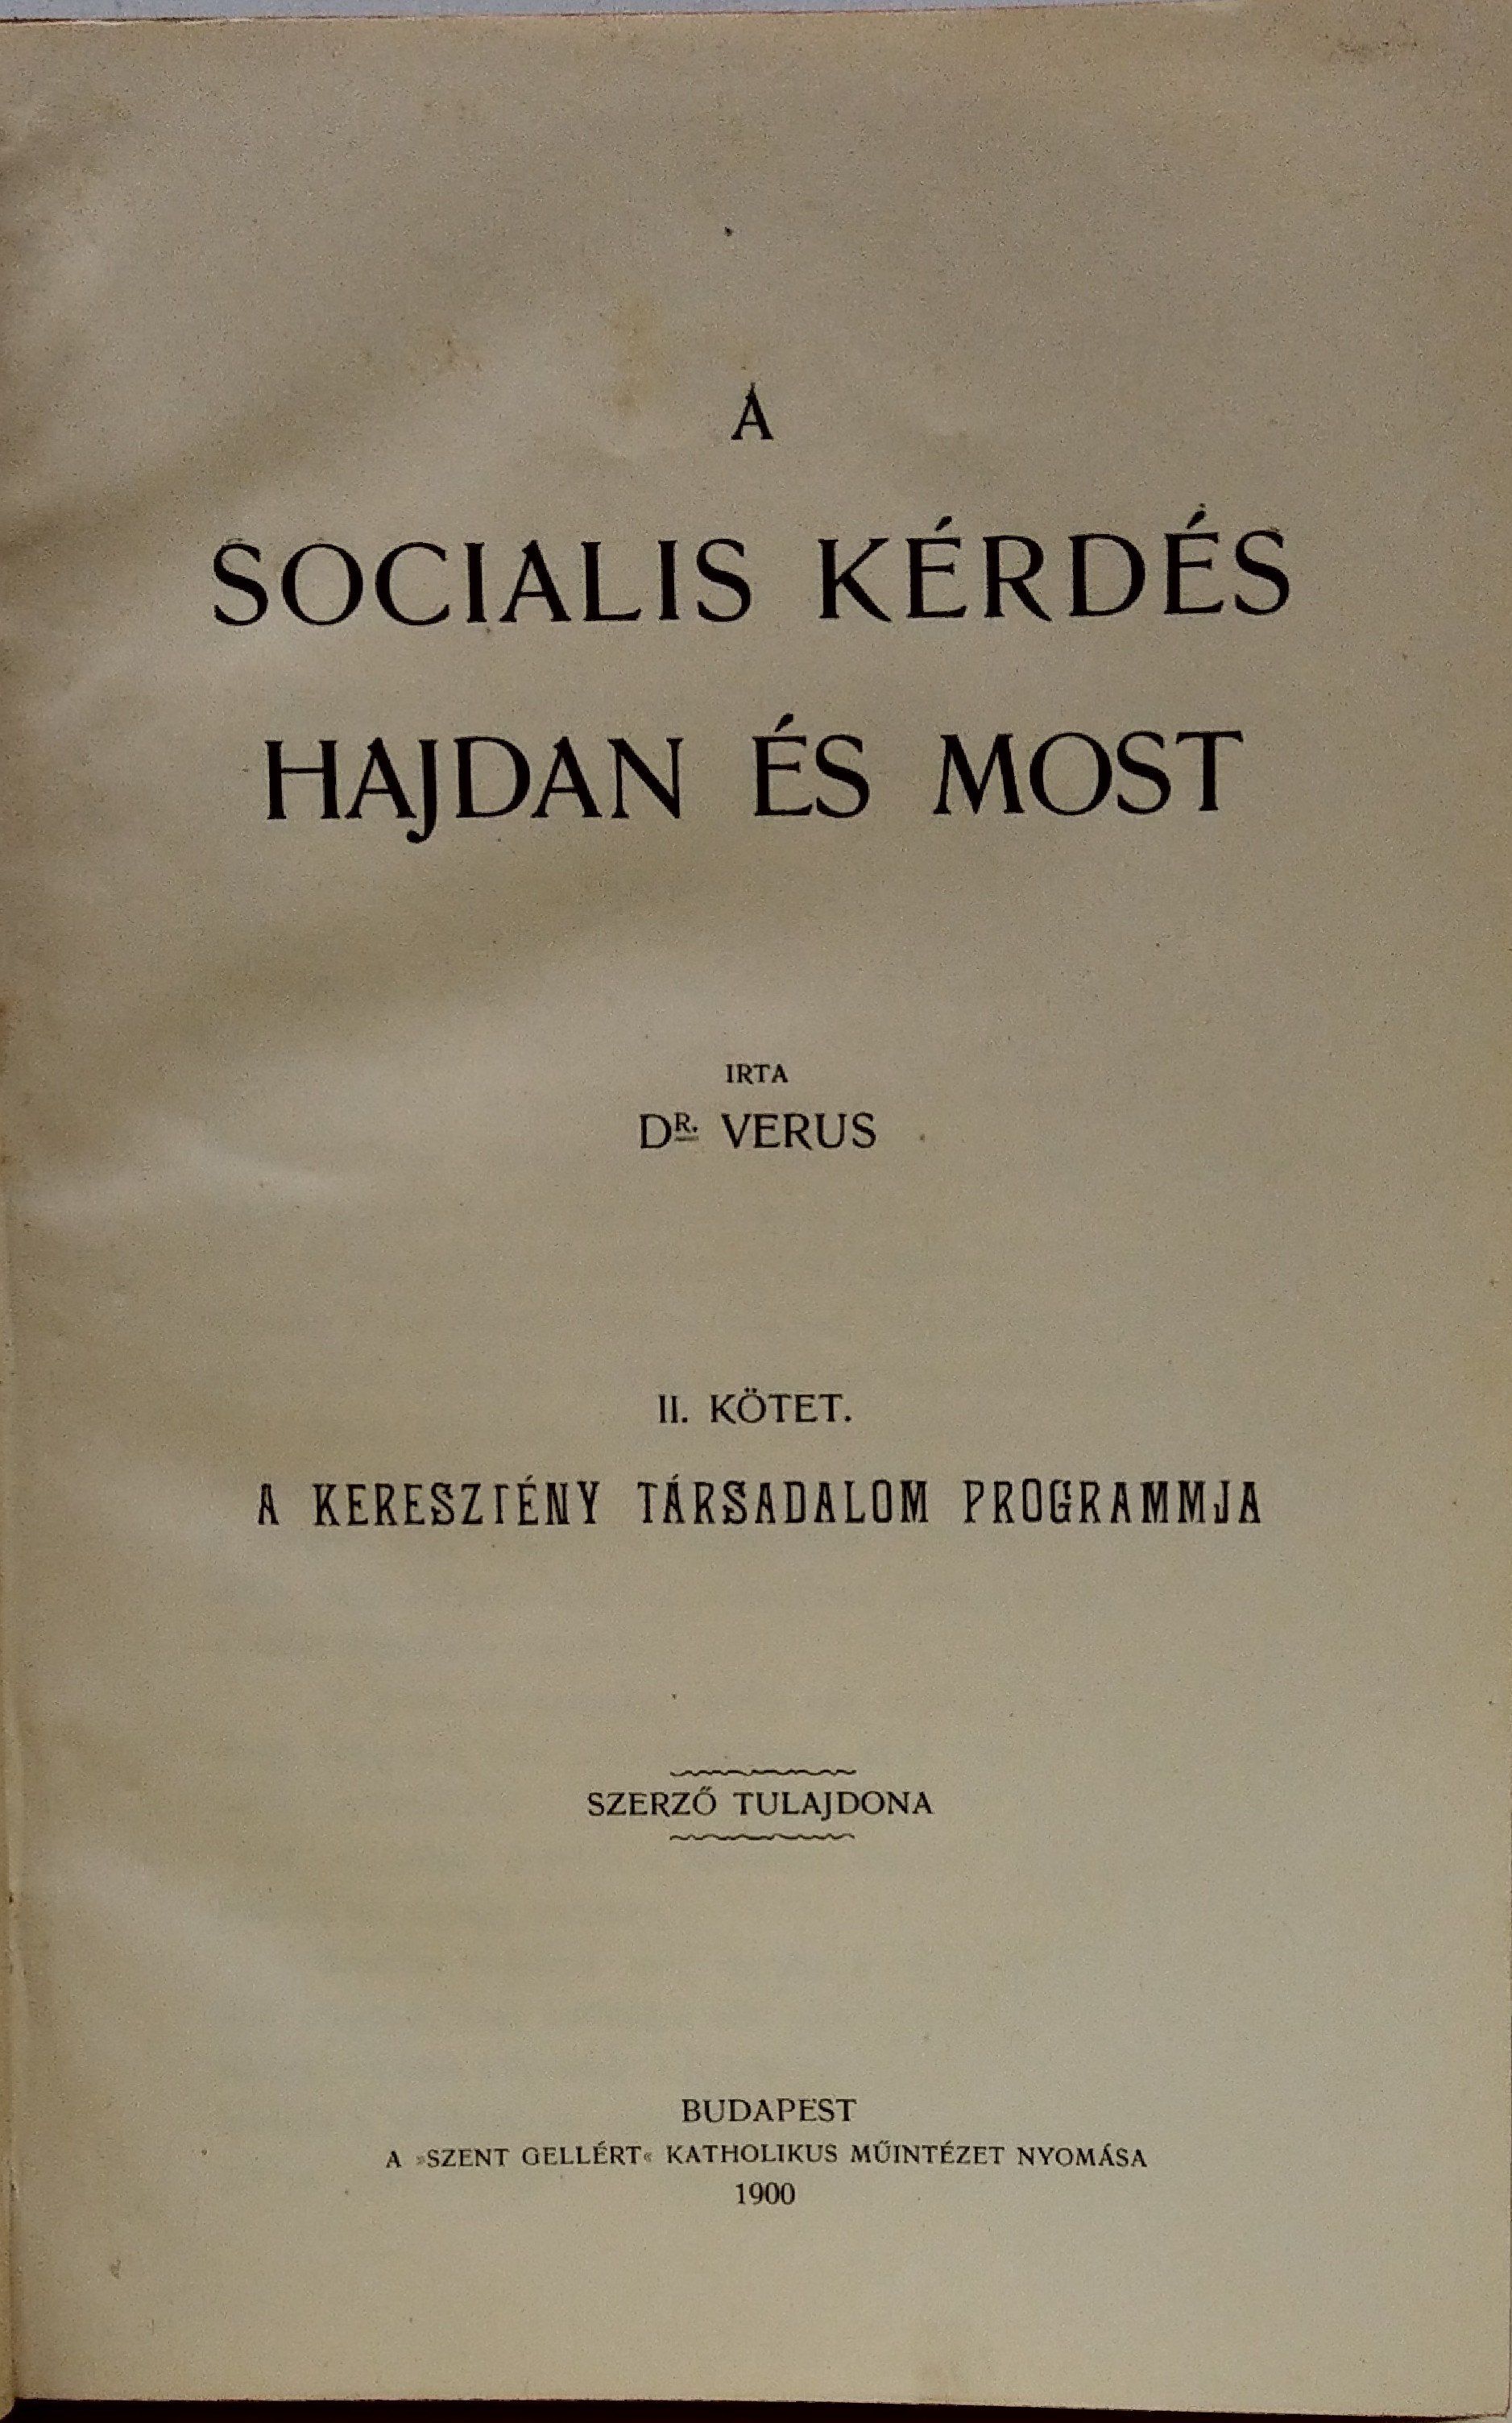 (ZIMÁNDY Ignác), Dr. Verus: A socialis kérdés hajdan és most 2. kötet (Rippl-Rónai Múzeum CC BY-NC-ND)